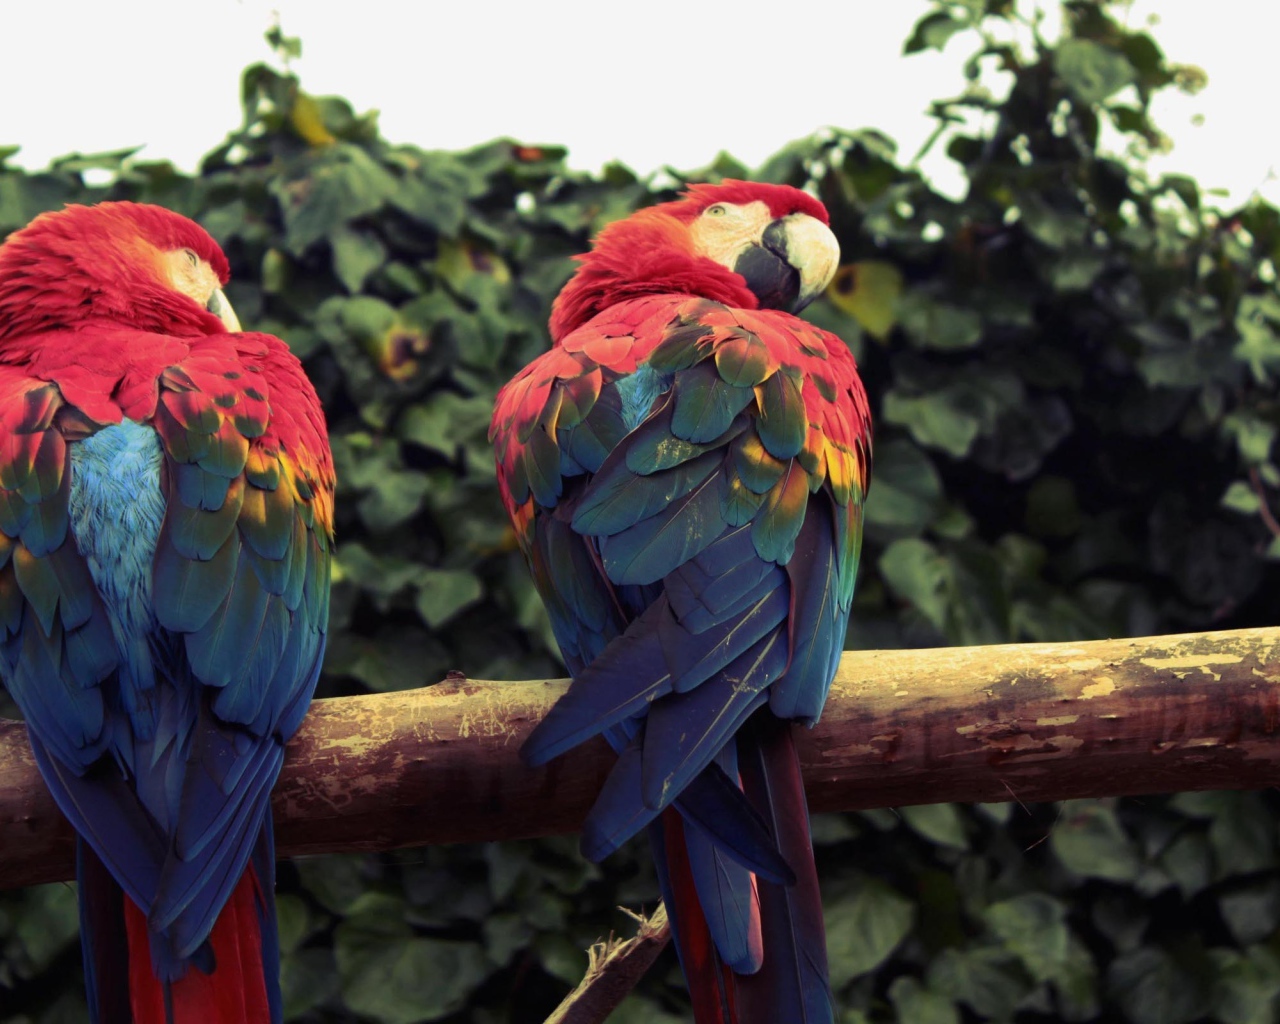 Два попугая ара сидят на ветке 